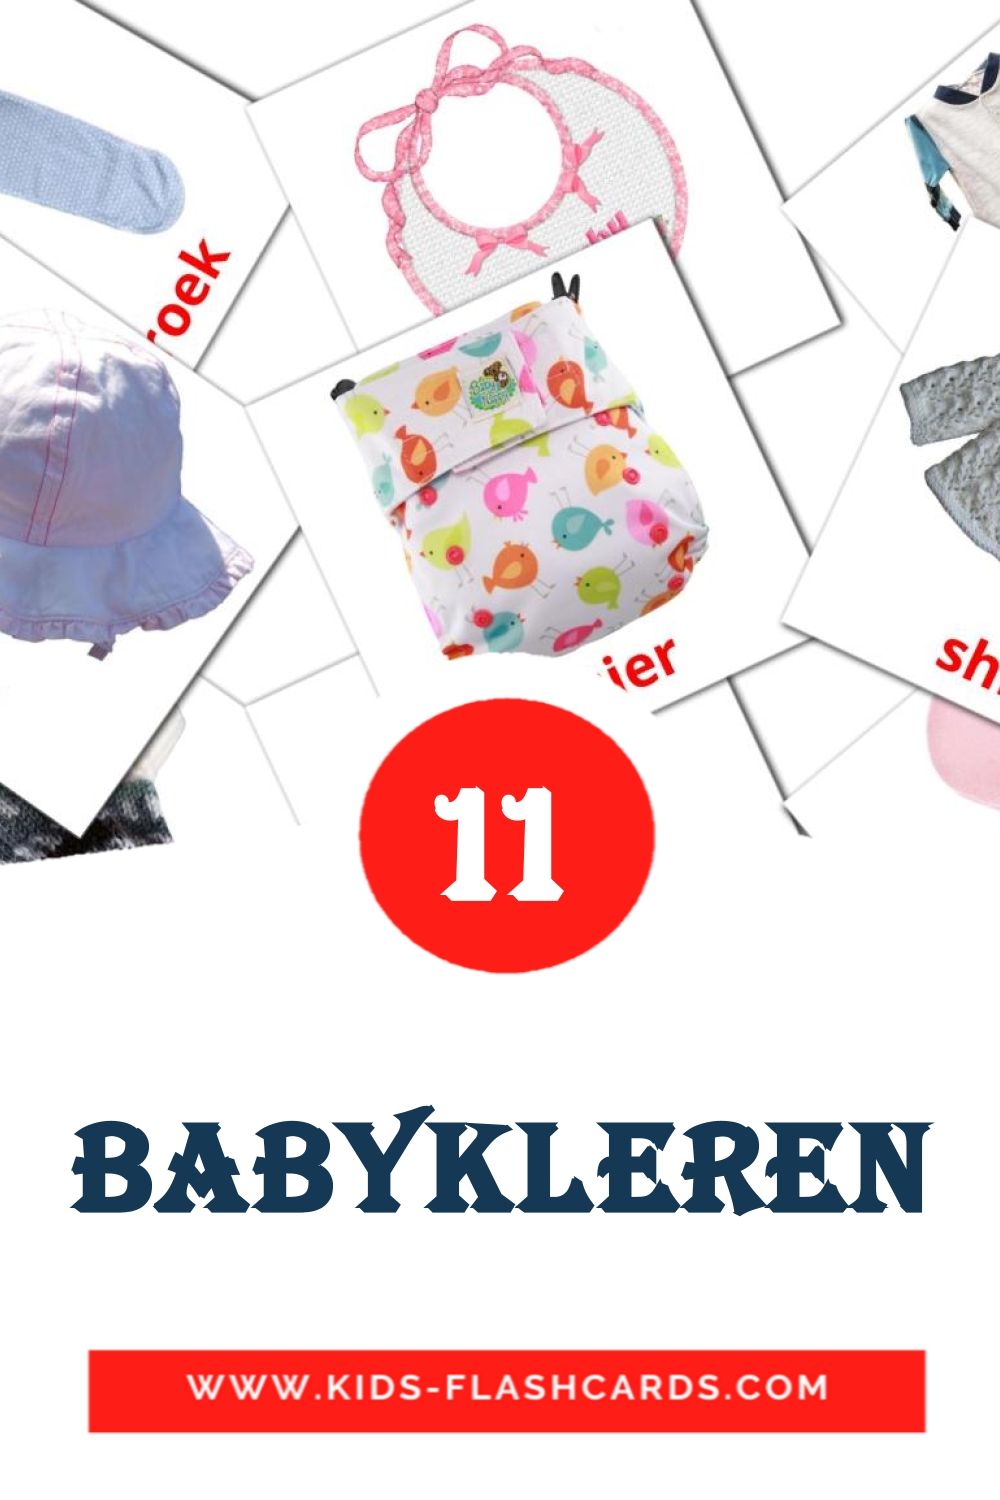 Kleren на нидерландcком для Детского Сада (12 карточек)